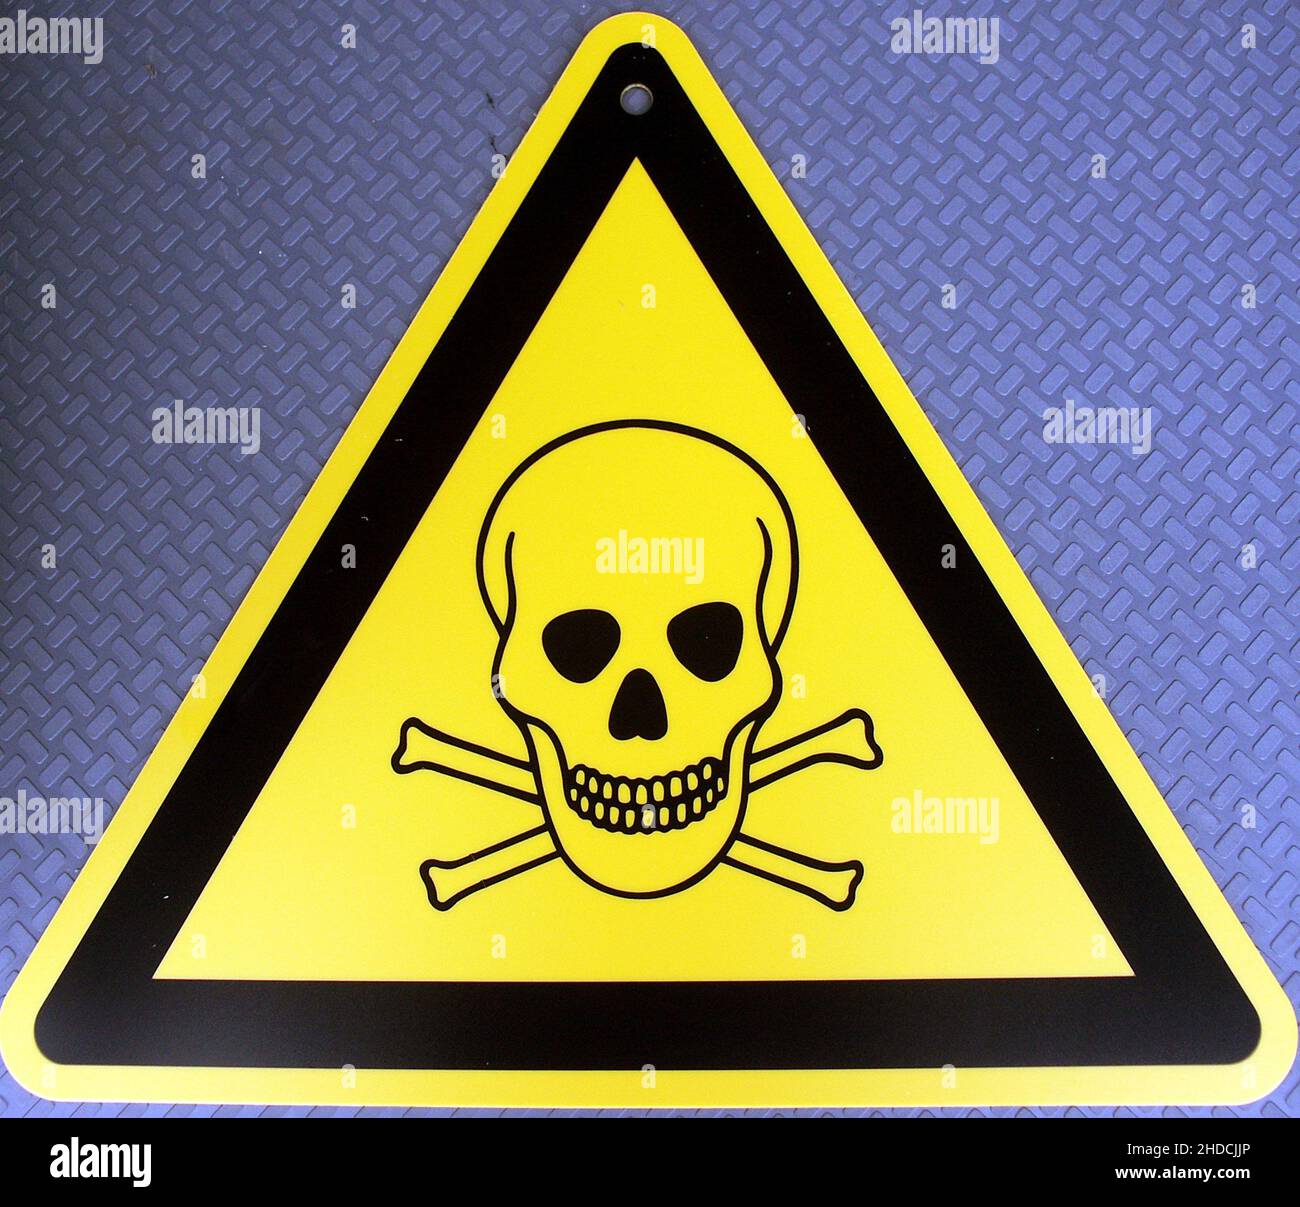 Gefahrenzeichen mit Totenkopfsymbol, Gift, Giftig, Giftige Flüssigkeit, Stock Photo